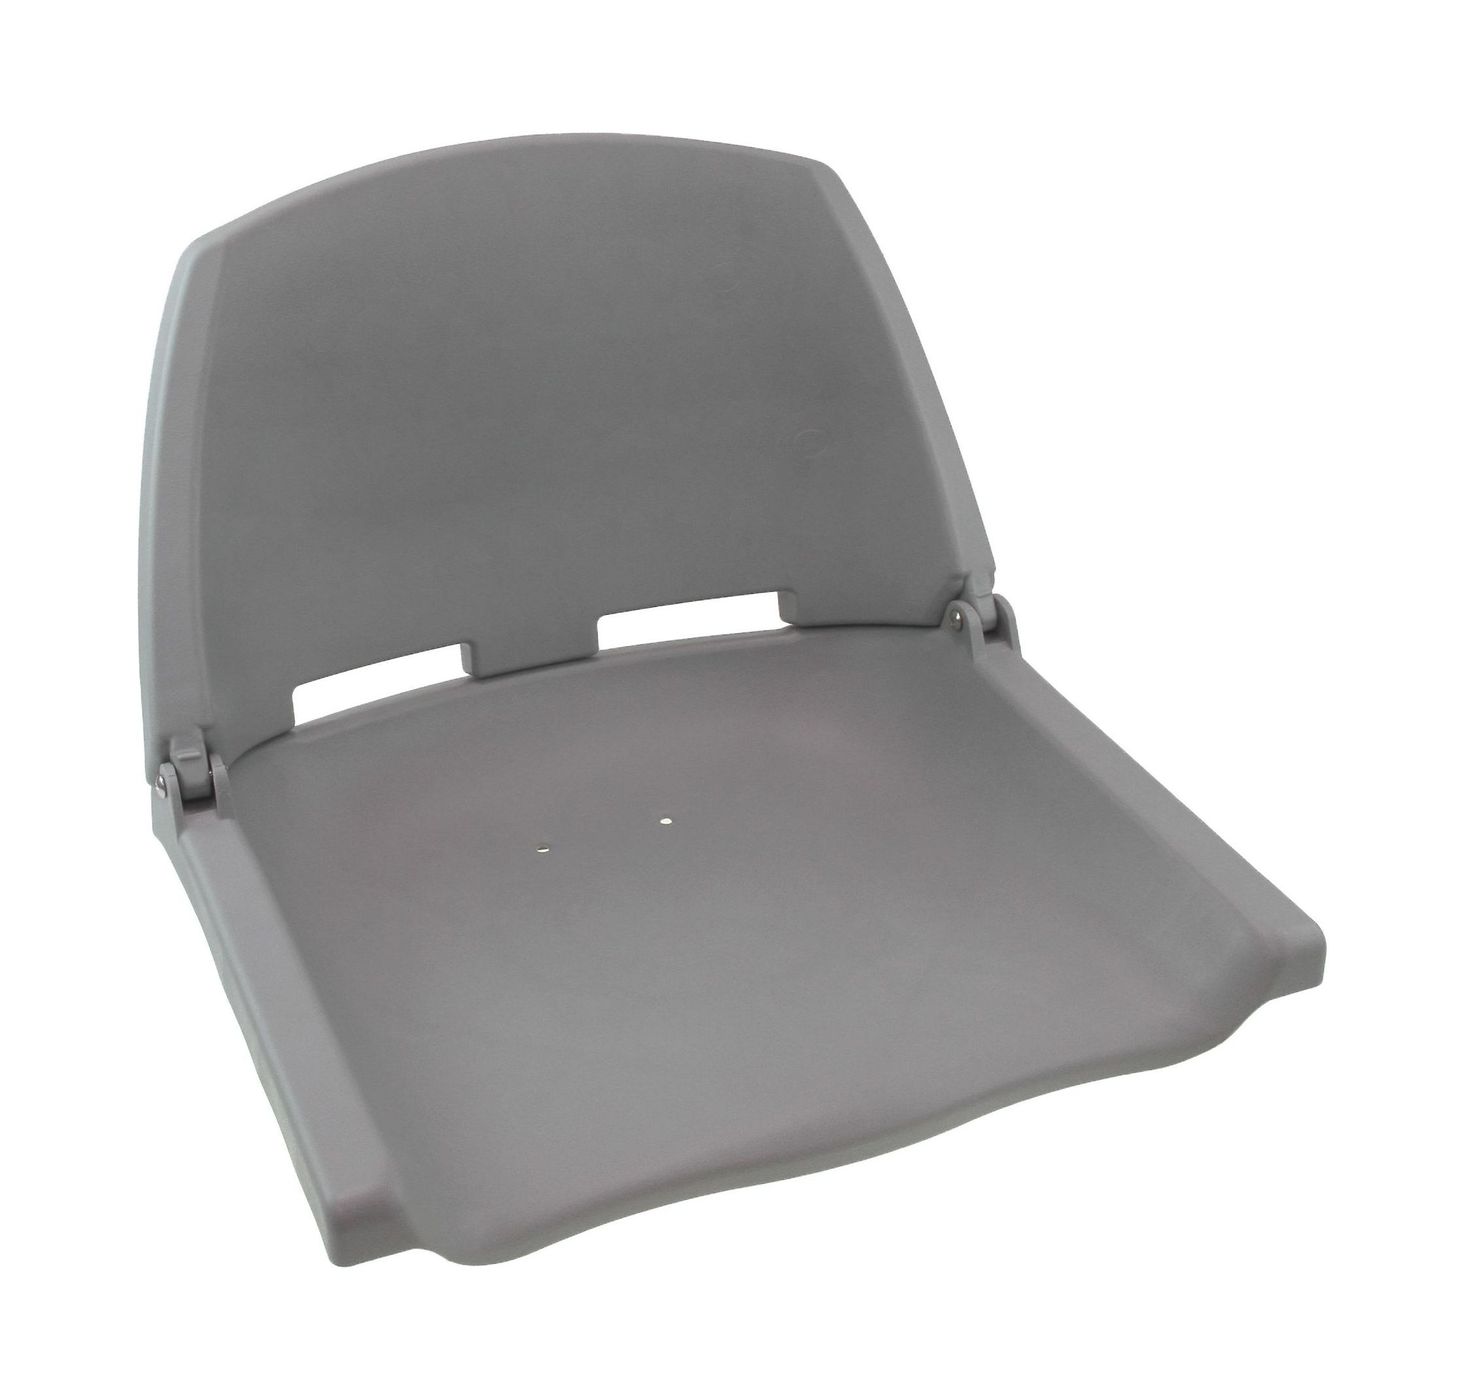 Кресло пластиковое серое C12503G серебряное кресло ные иллюстрации паулина бэйнс льюис клайв стейплз